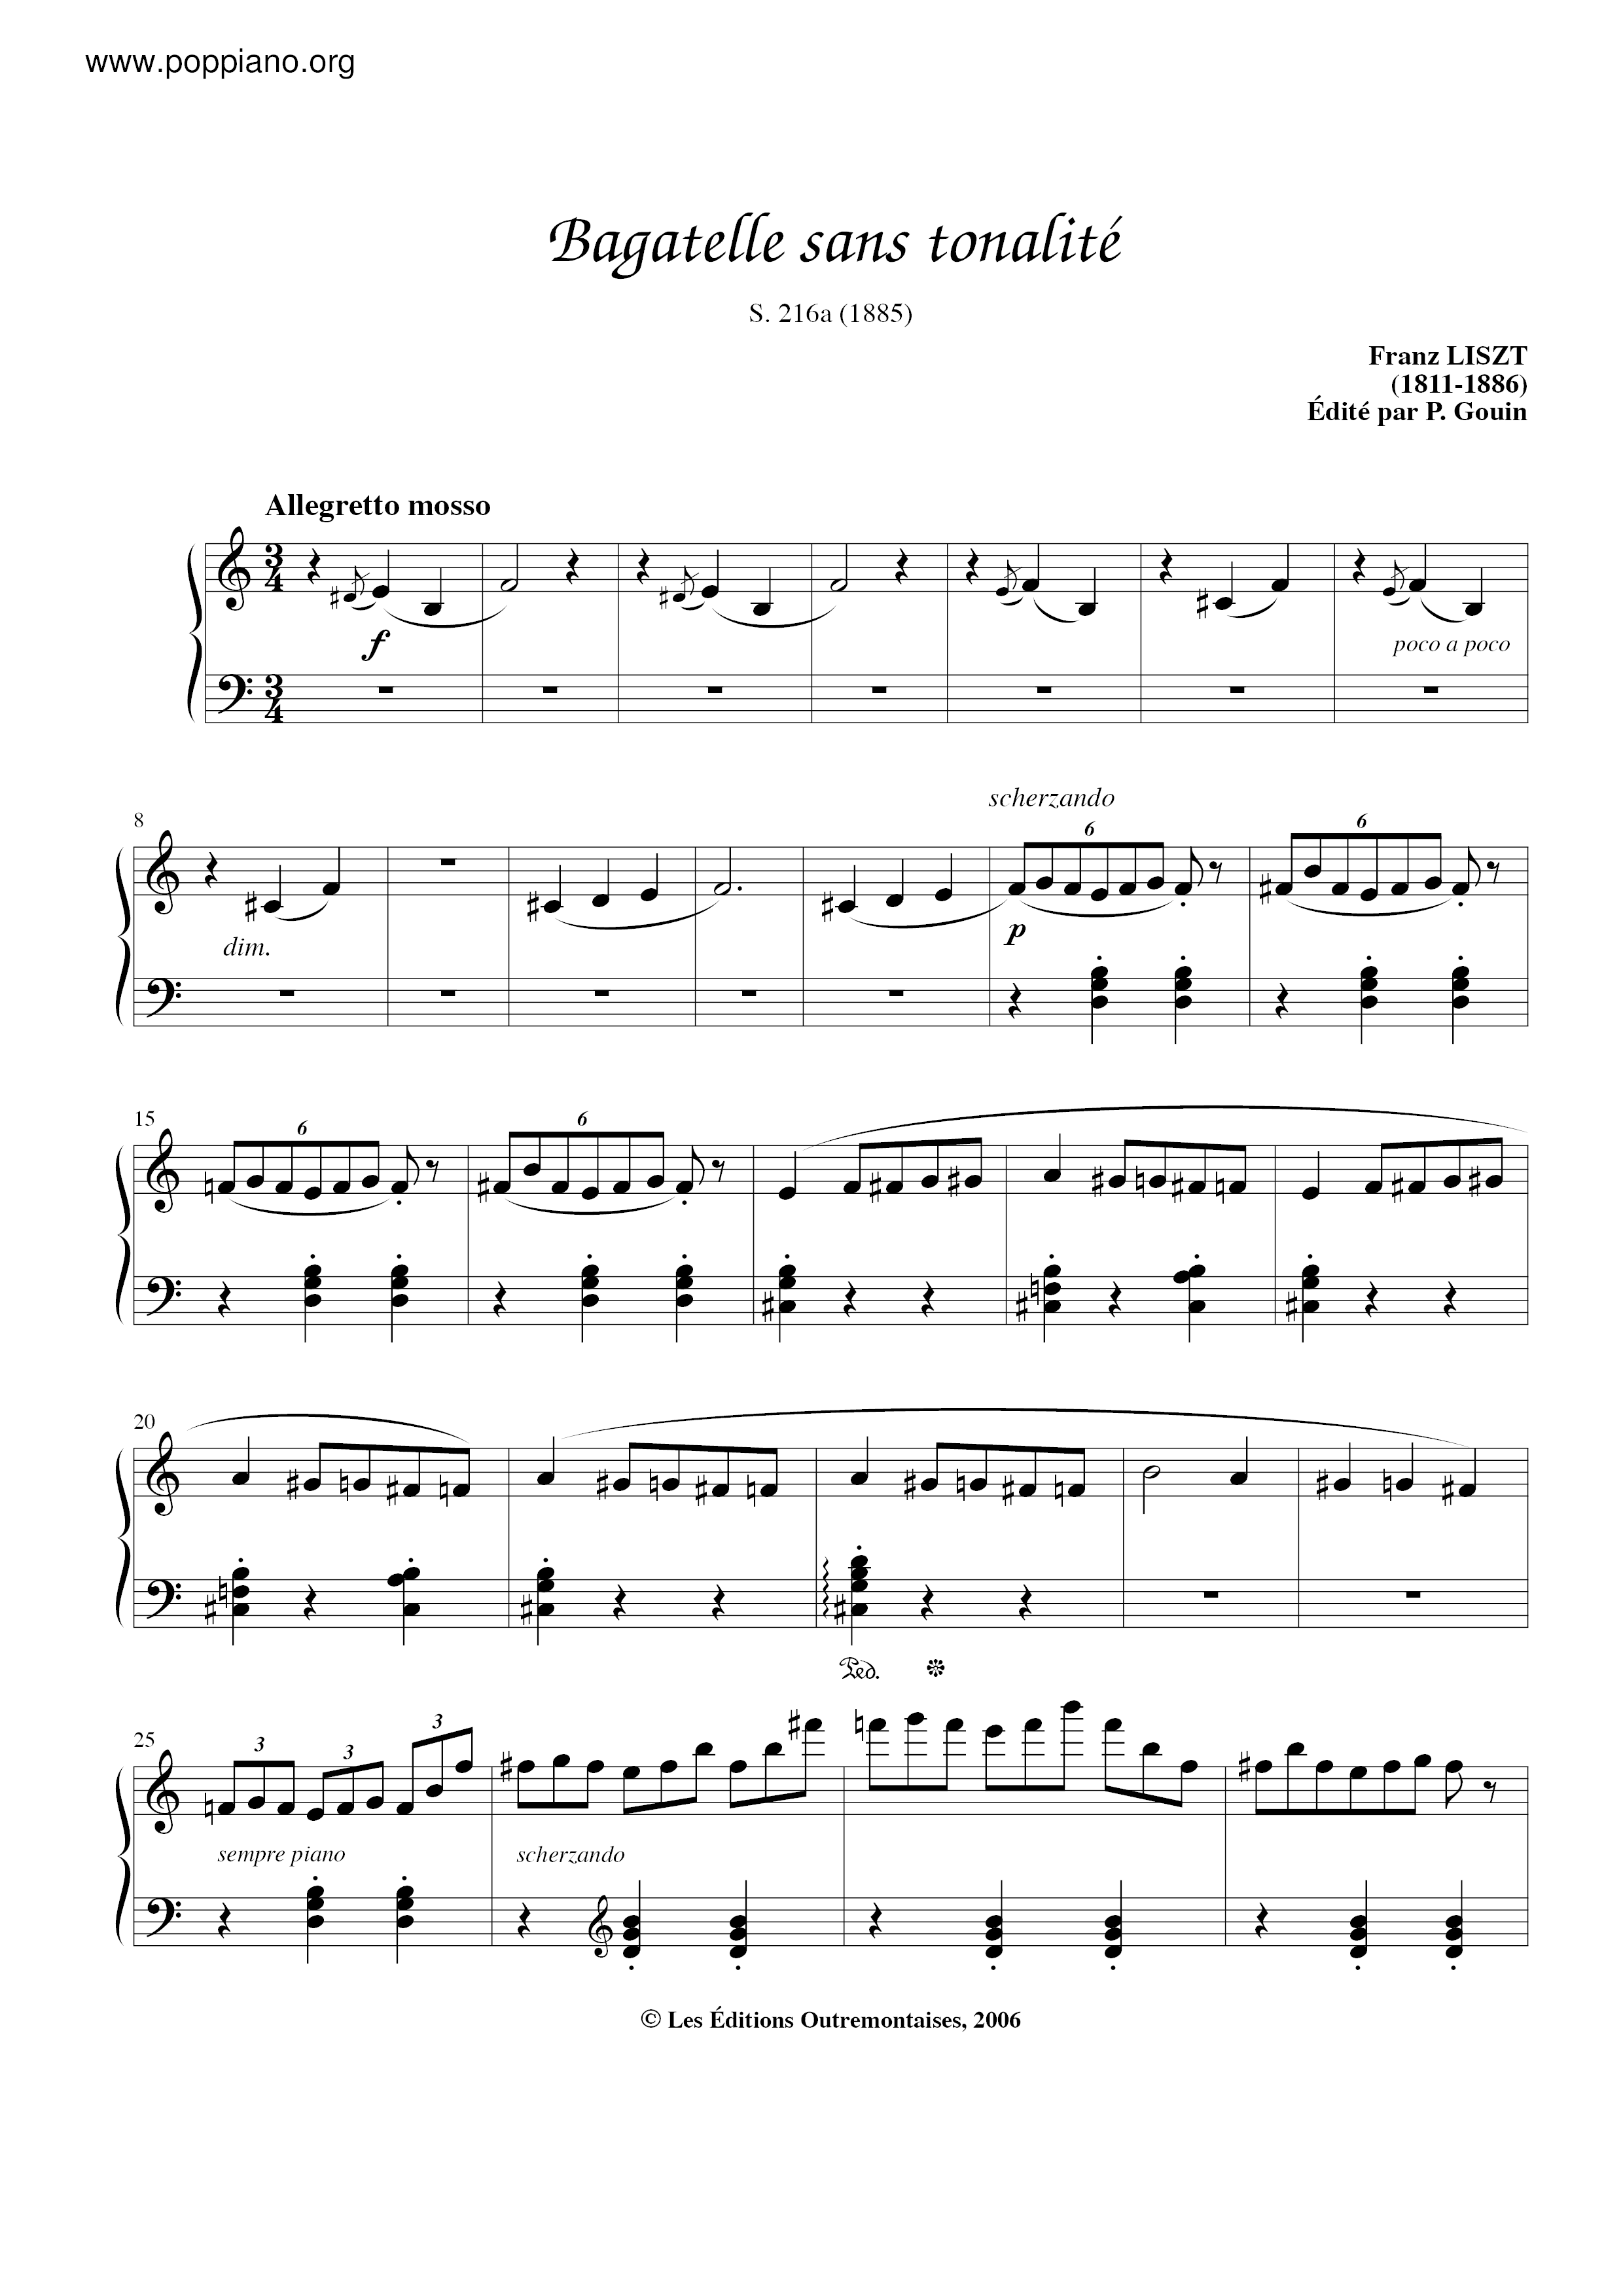 Bagatelle sans tonalite, S.216a琴譜